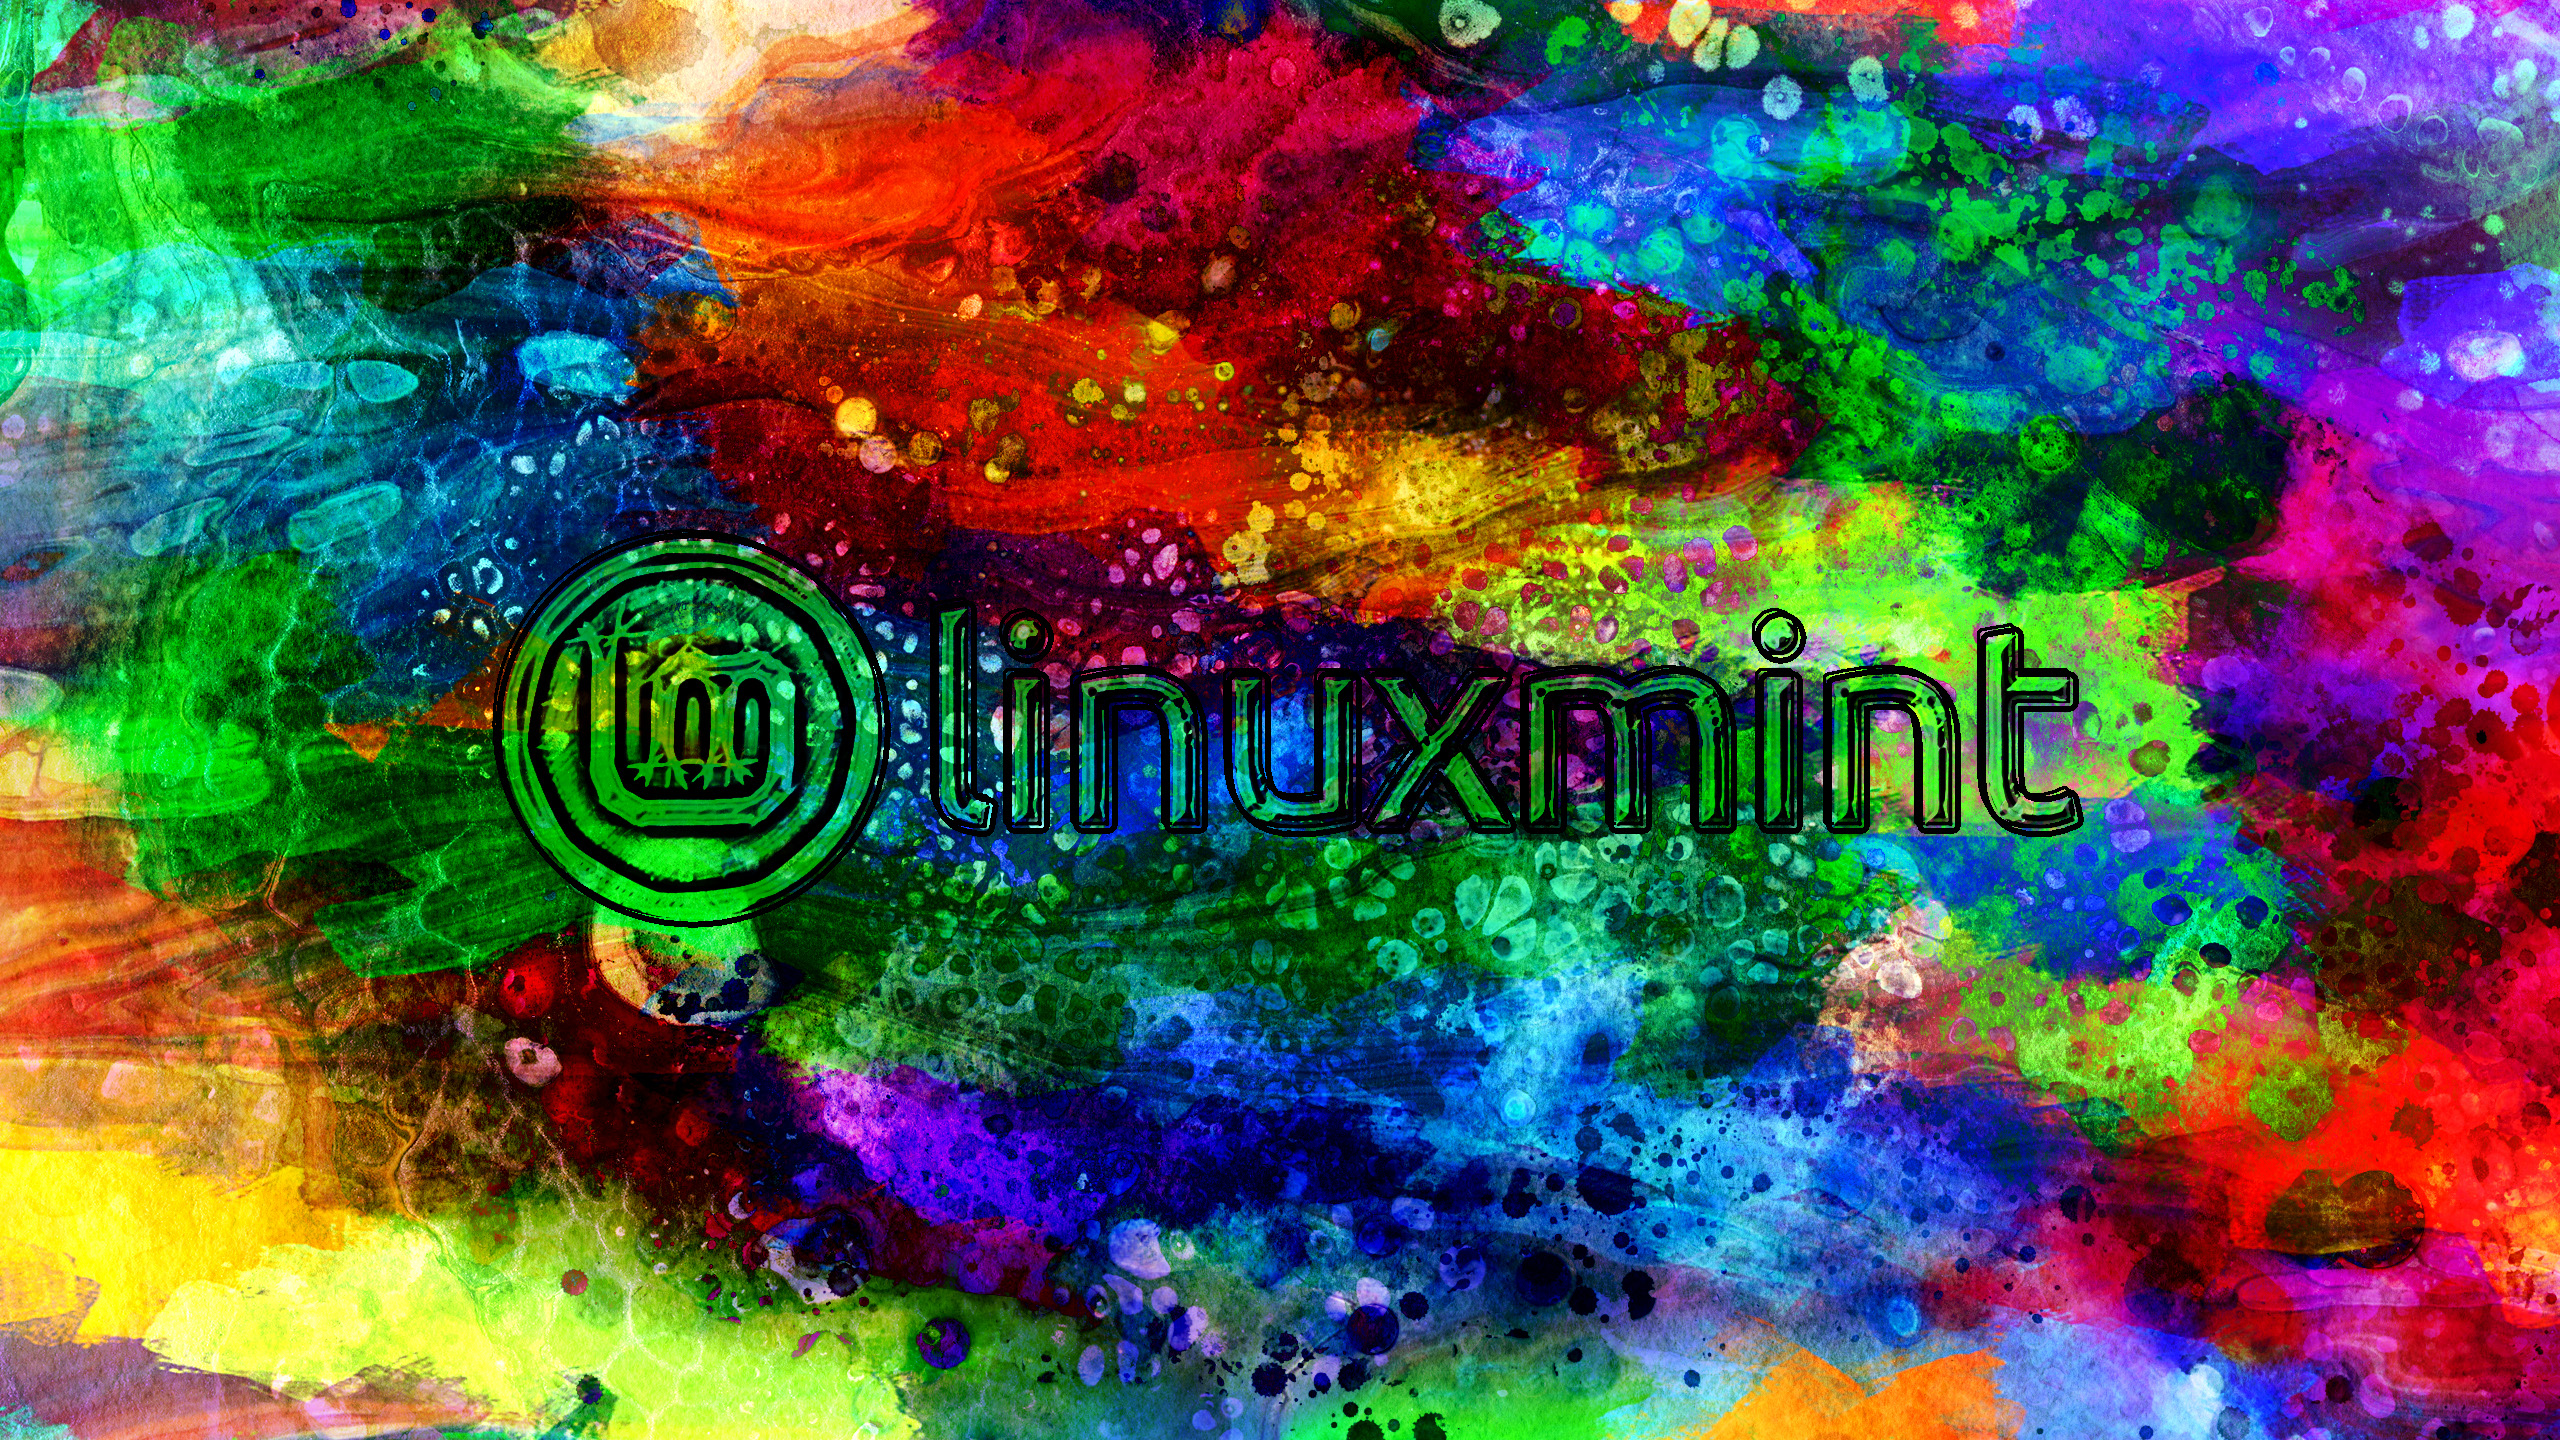 Purple Linux Mint Art Wallpapers